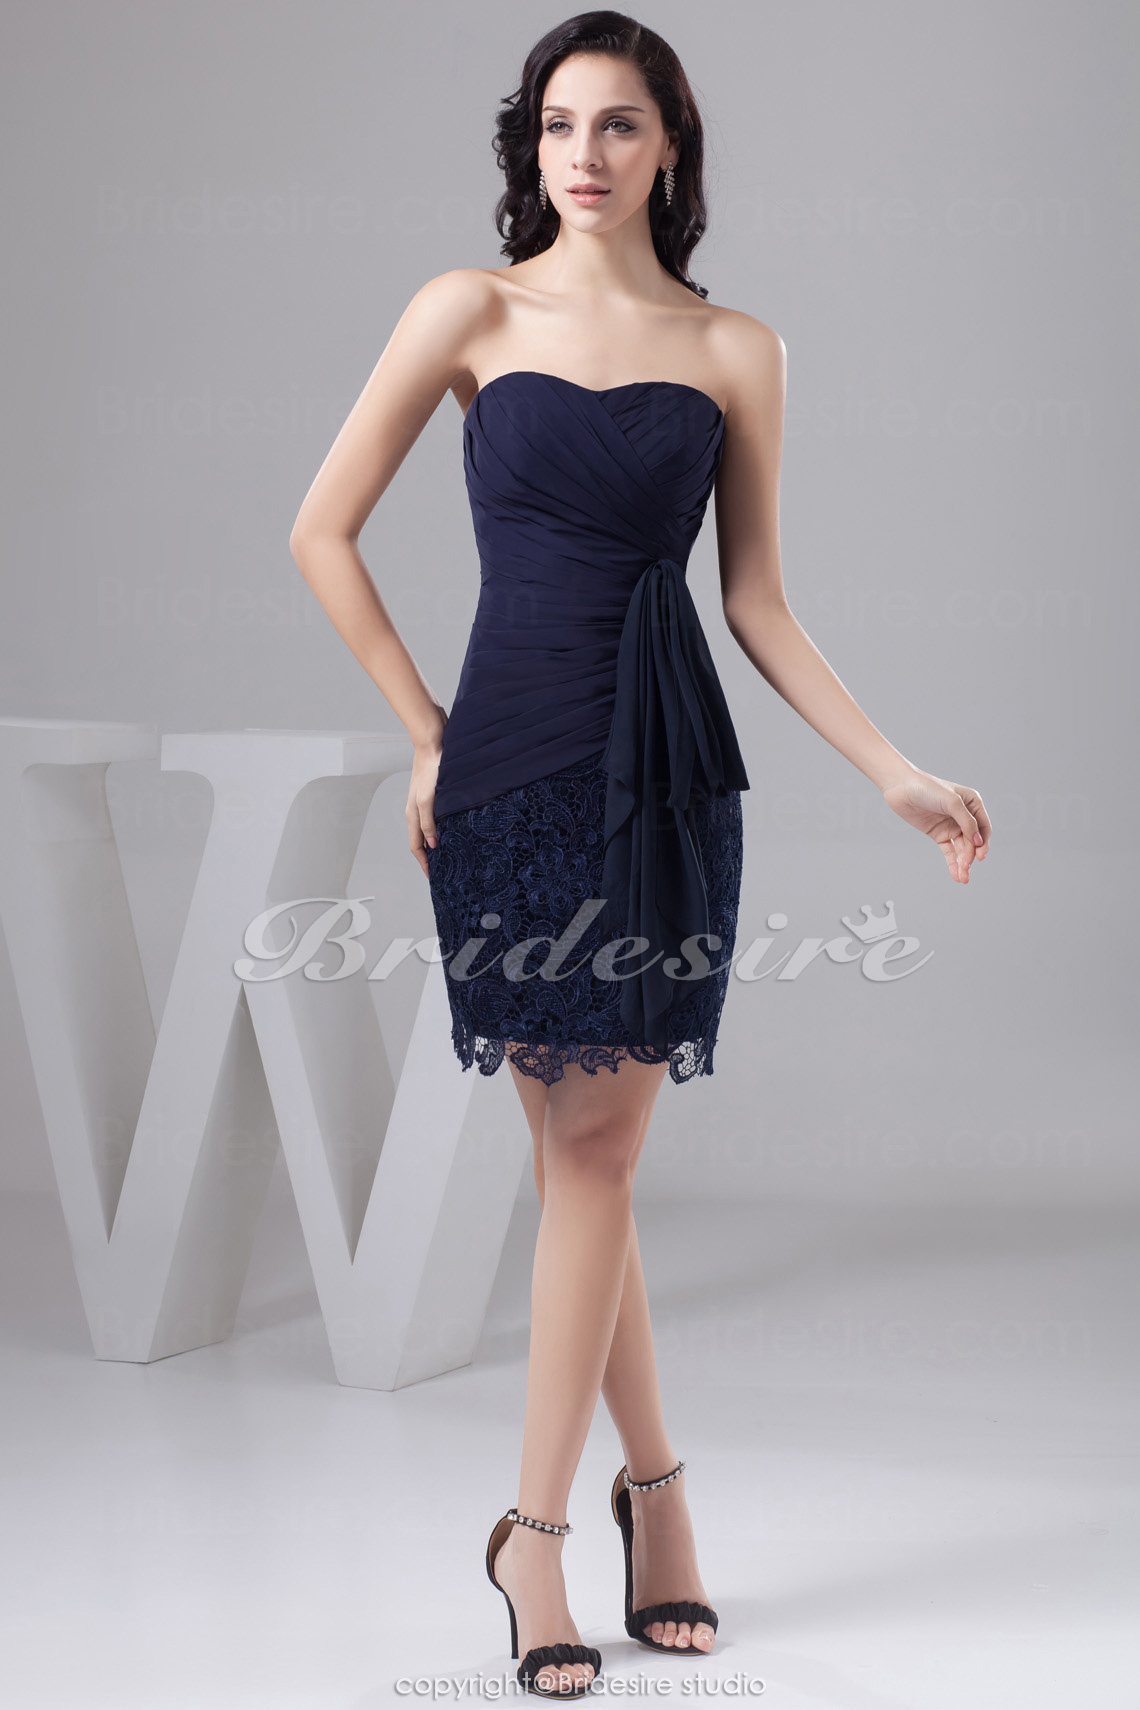 Sheath/Column Strapless Short/Mini Sleeveless Chiffon Lace Dress